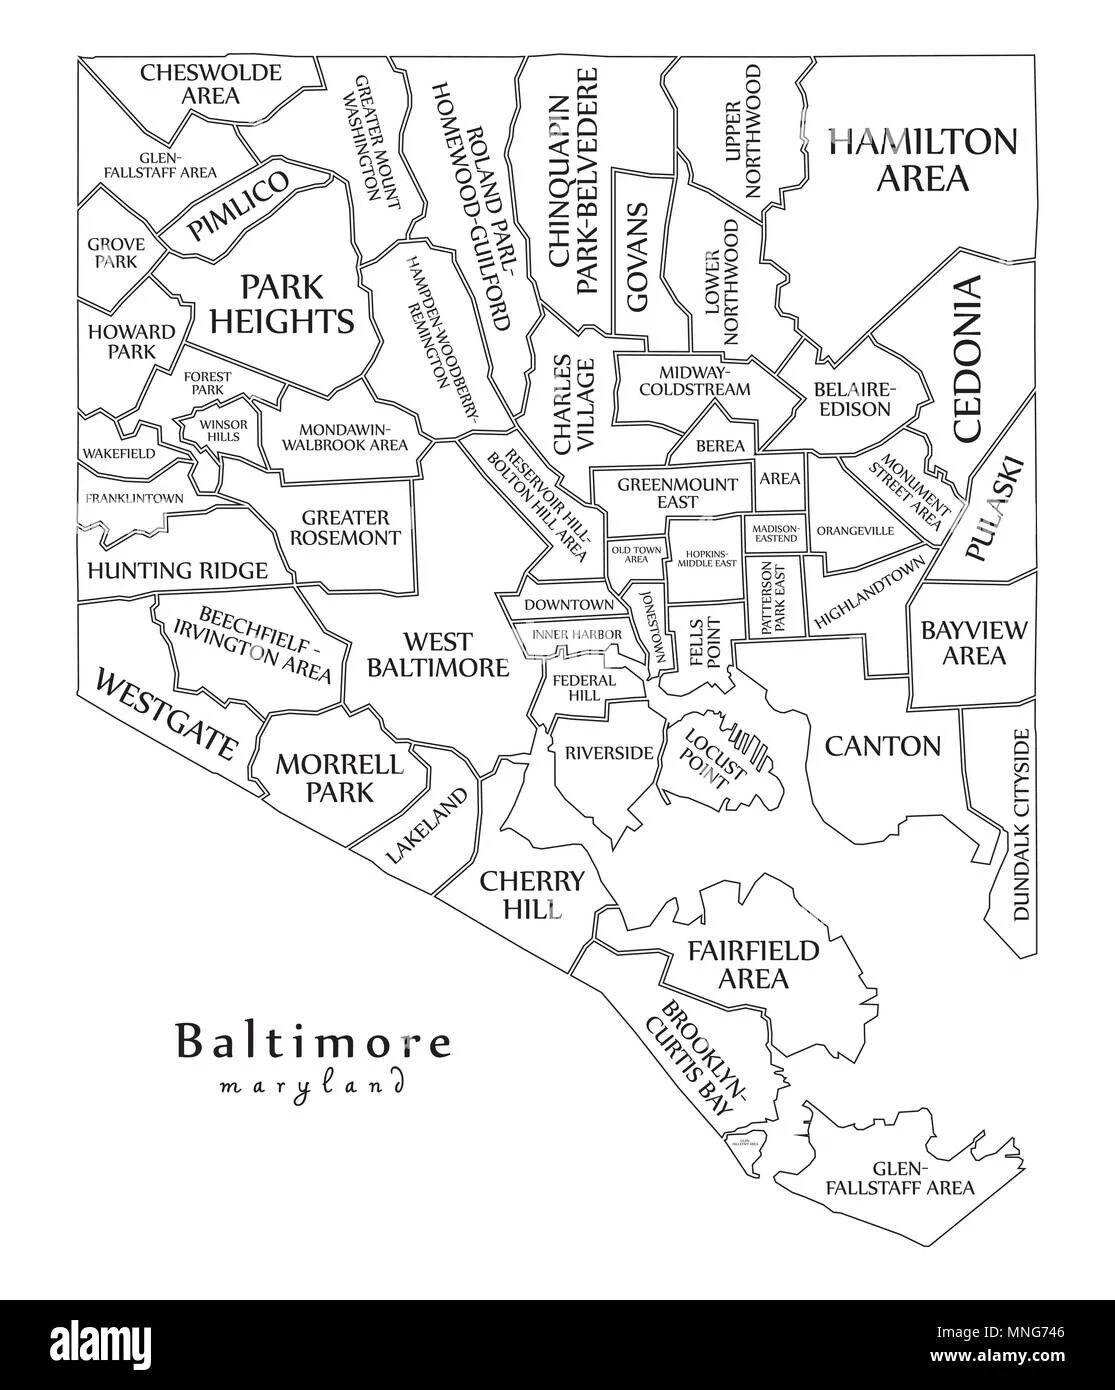 Где находится город балтимор. Балтимор город в США на карте США. Балтимор город на карте. Балтимор город в США на карте. Балтимор штат Мэриленд на карте.